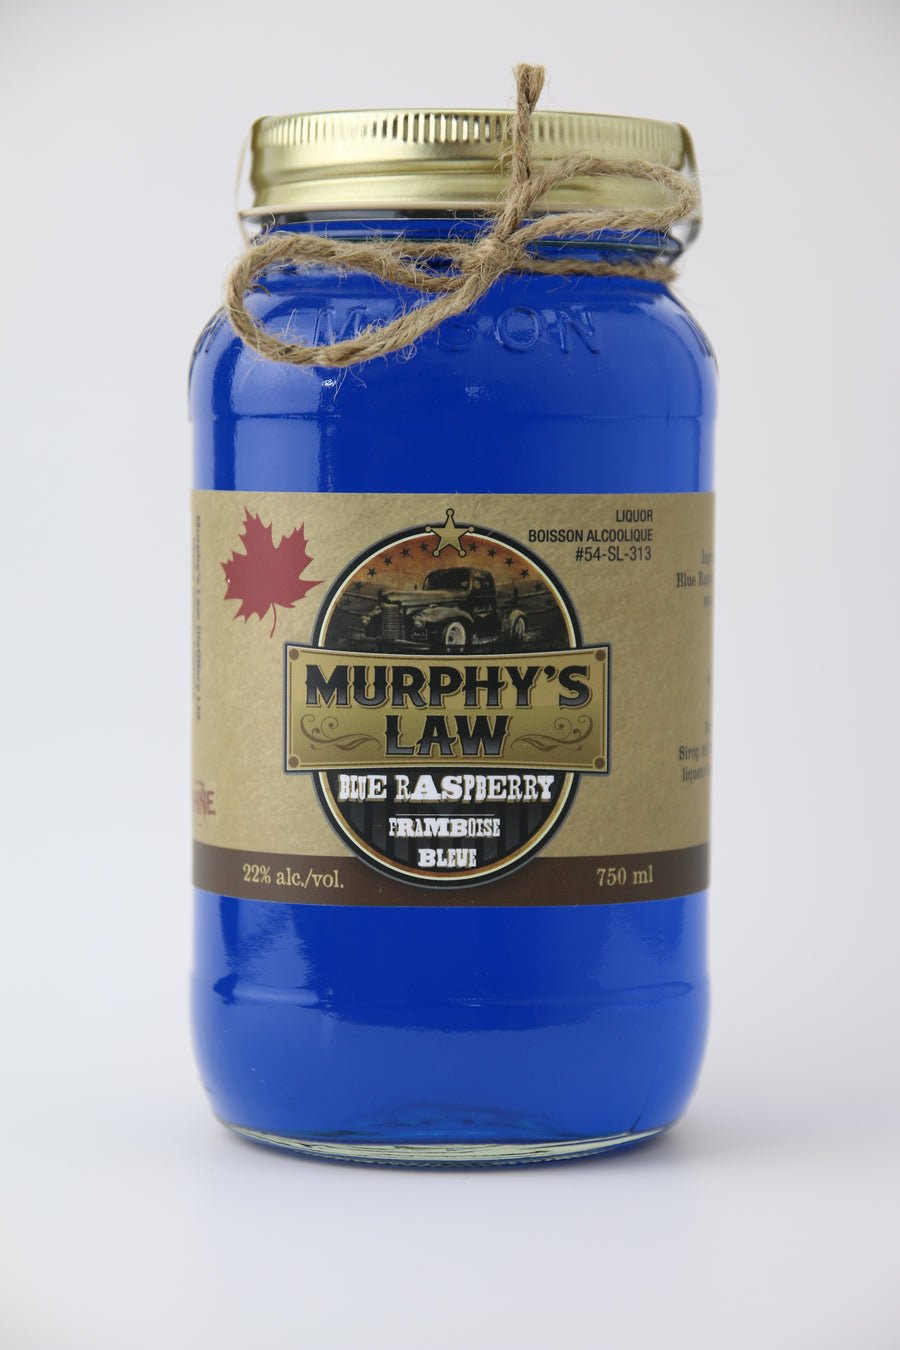 Bottle of Blue Raspberry Moonshine